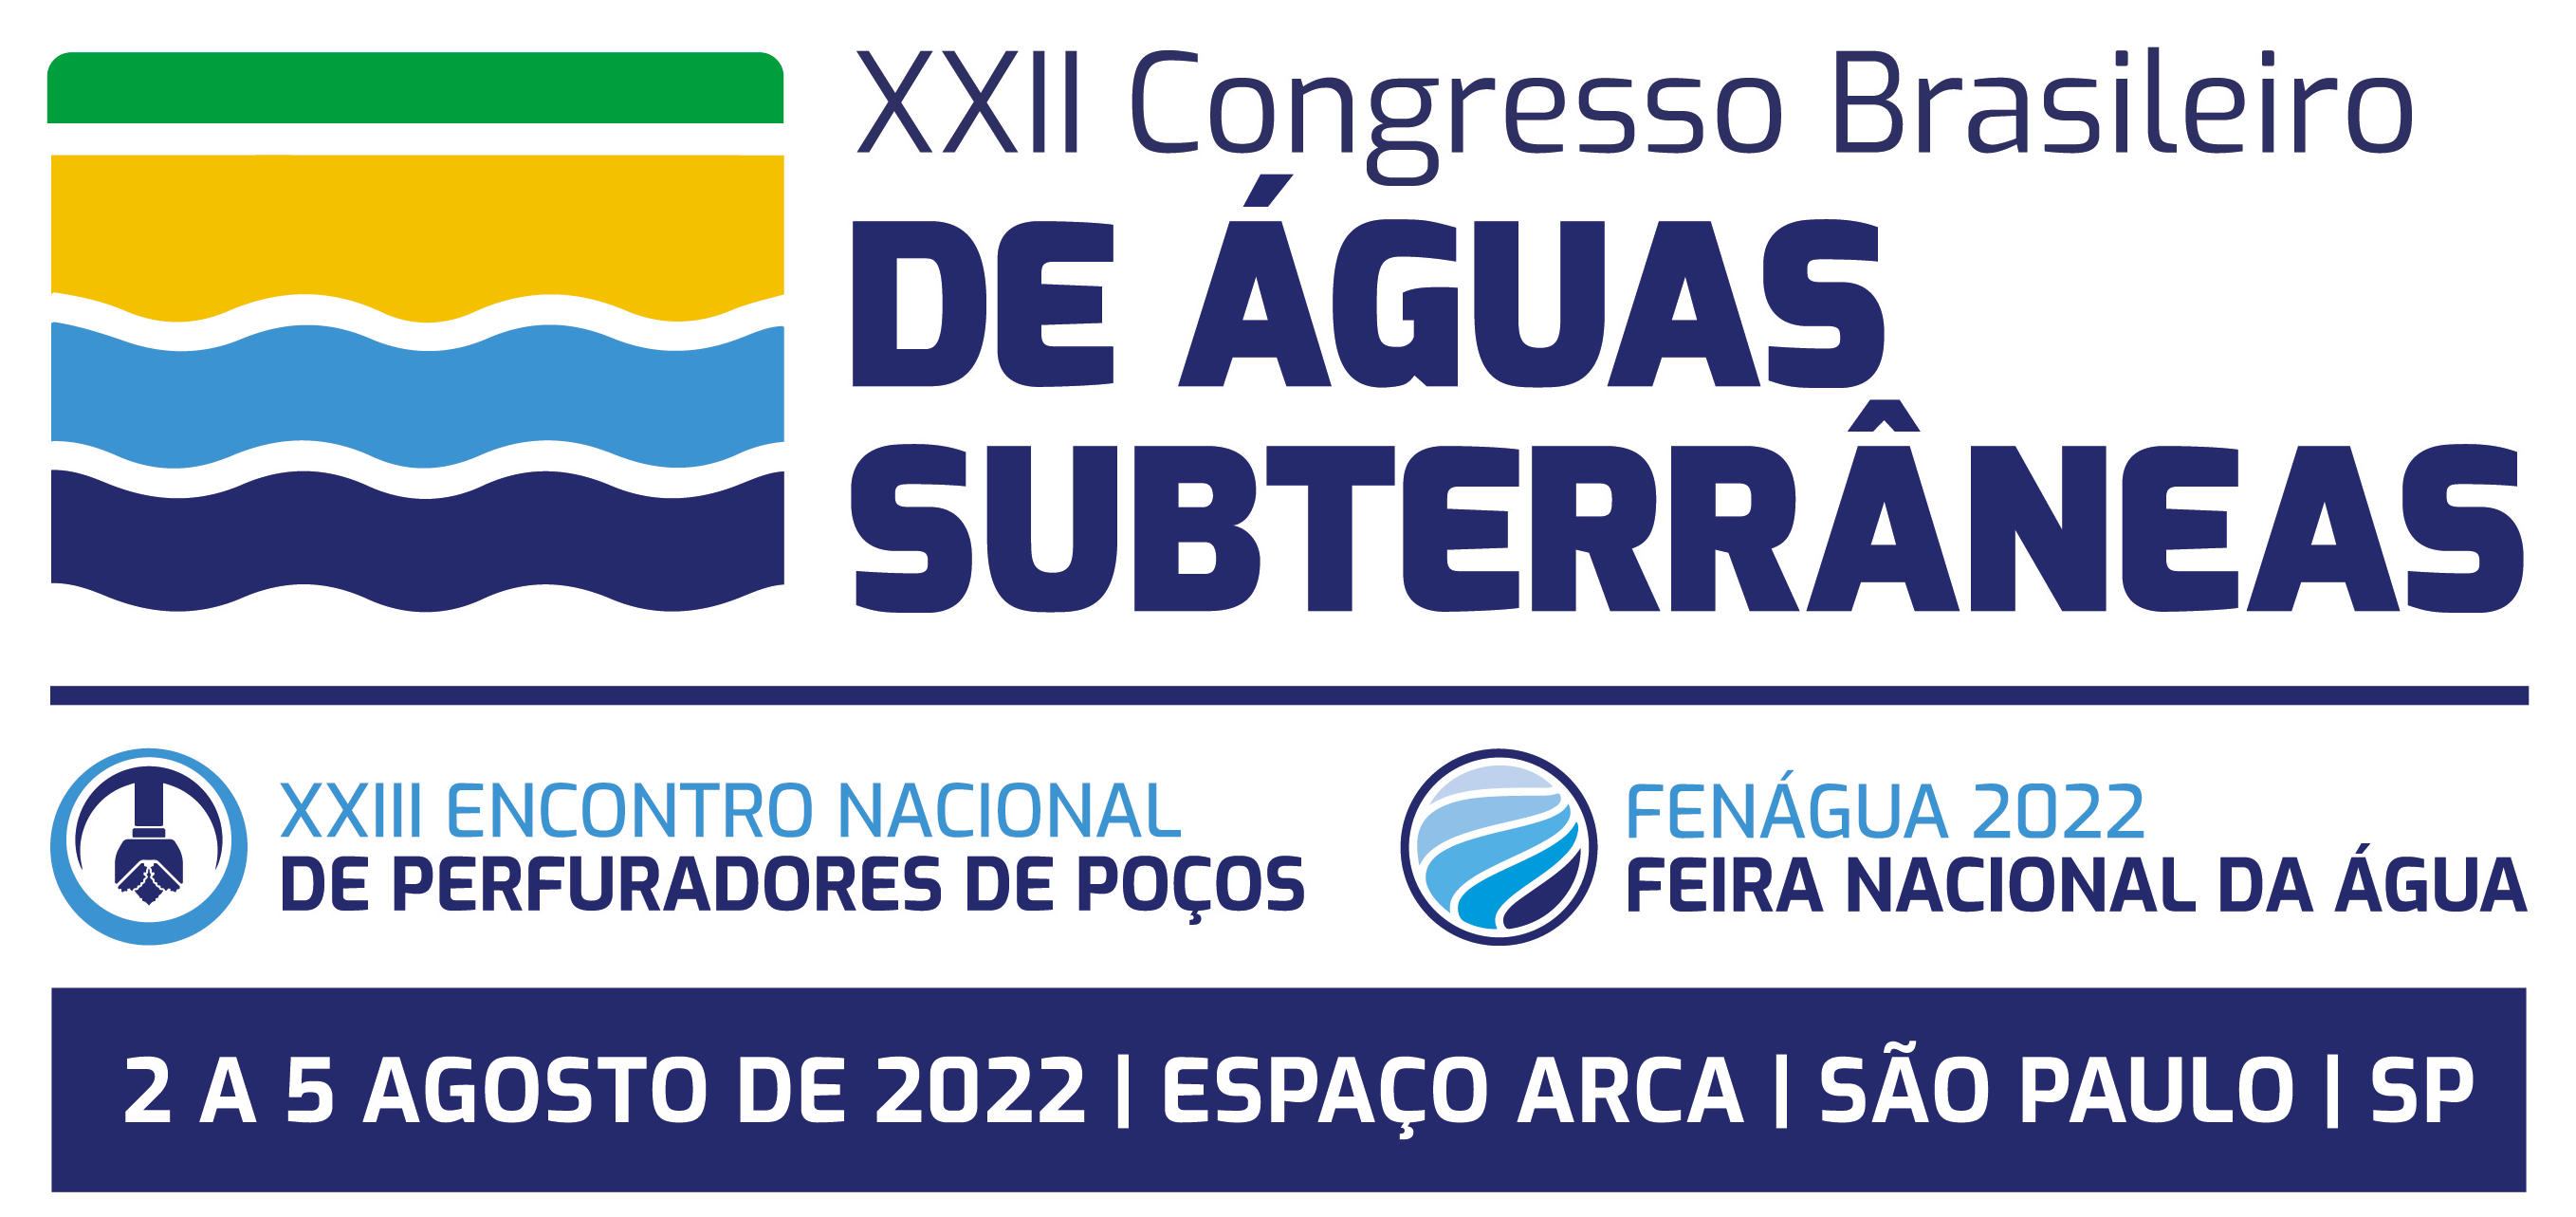 Congresso Brasileiro de Águas Subterrâneas, XXIII Encontro Nacional de Perfuradores de Poços e FENÁGUA 2022